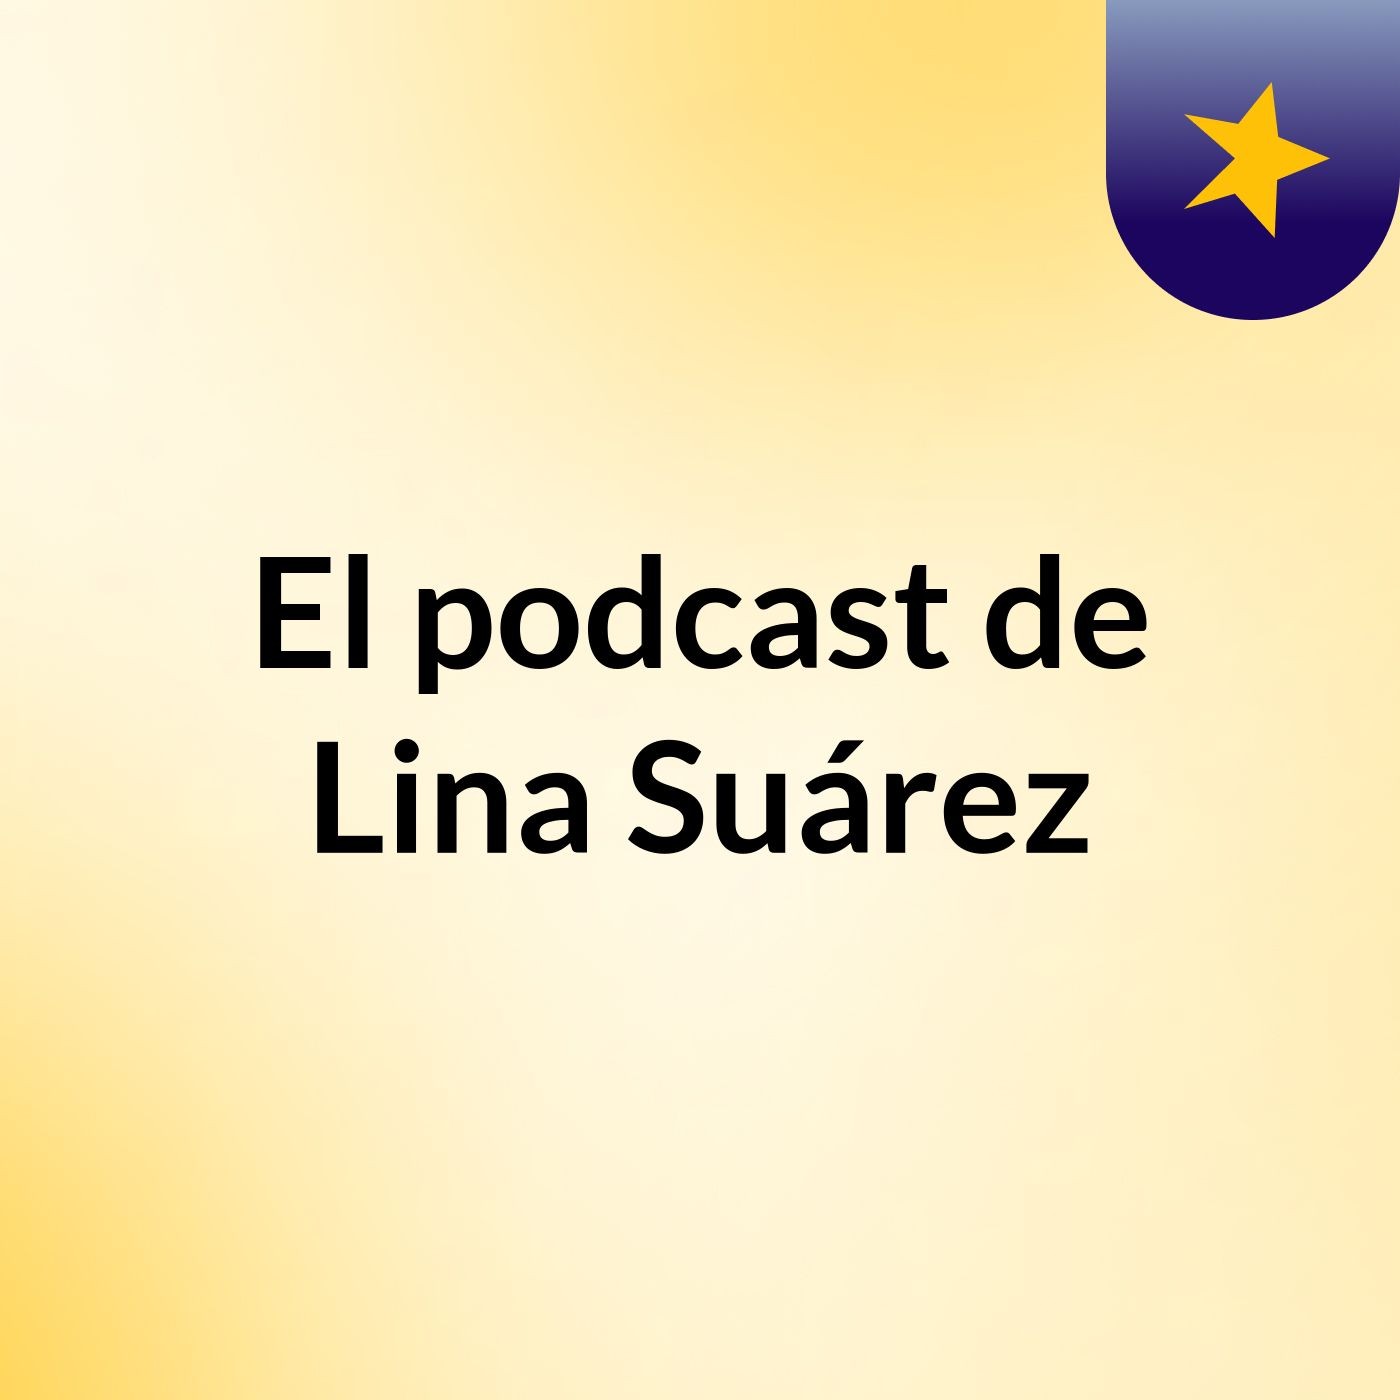 El podcast de Lina Suárez